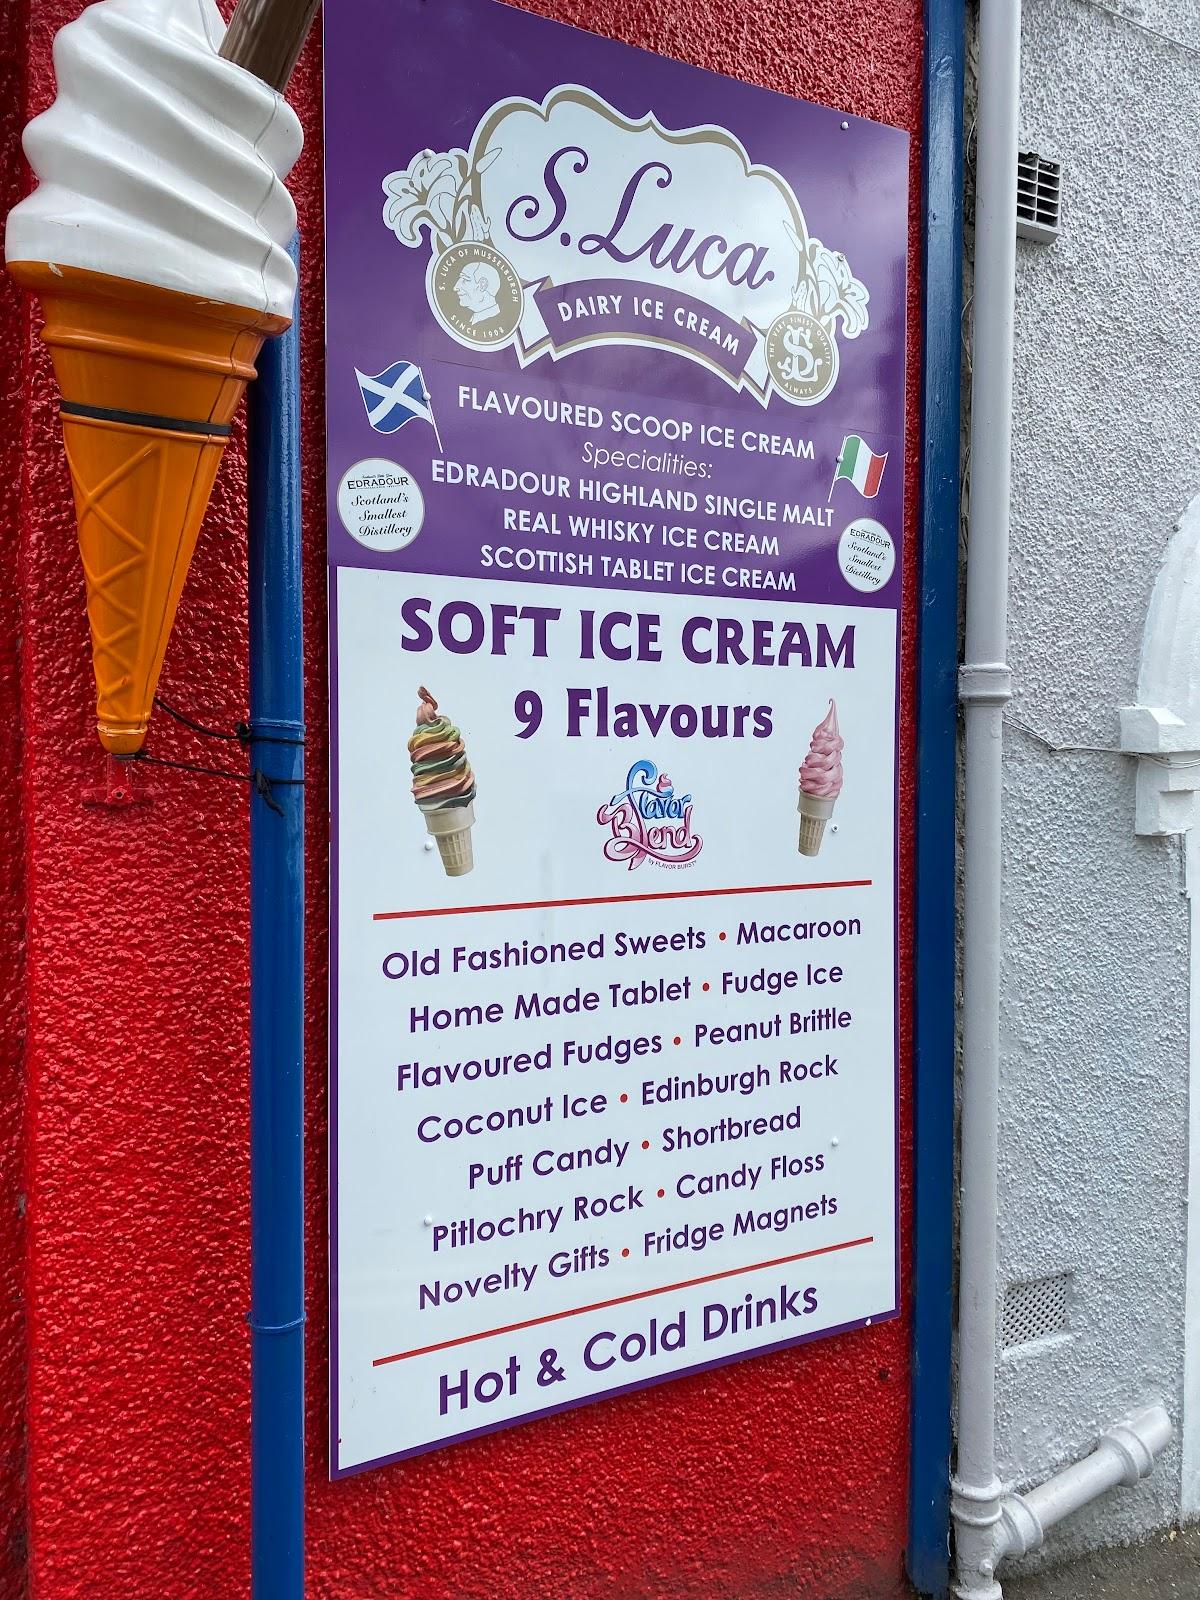 Scoope Ice cream - Home